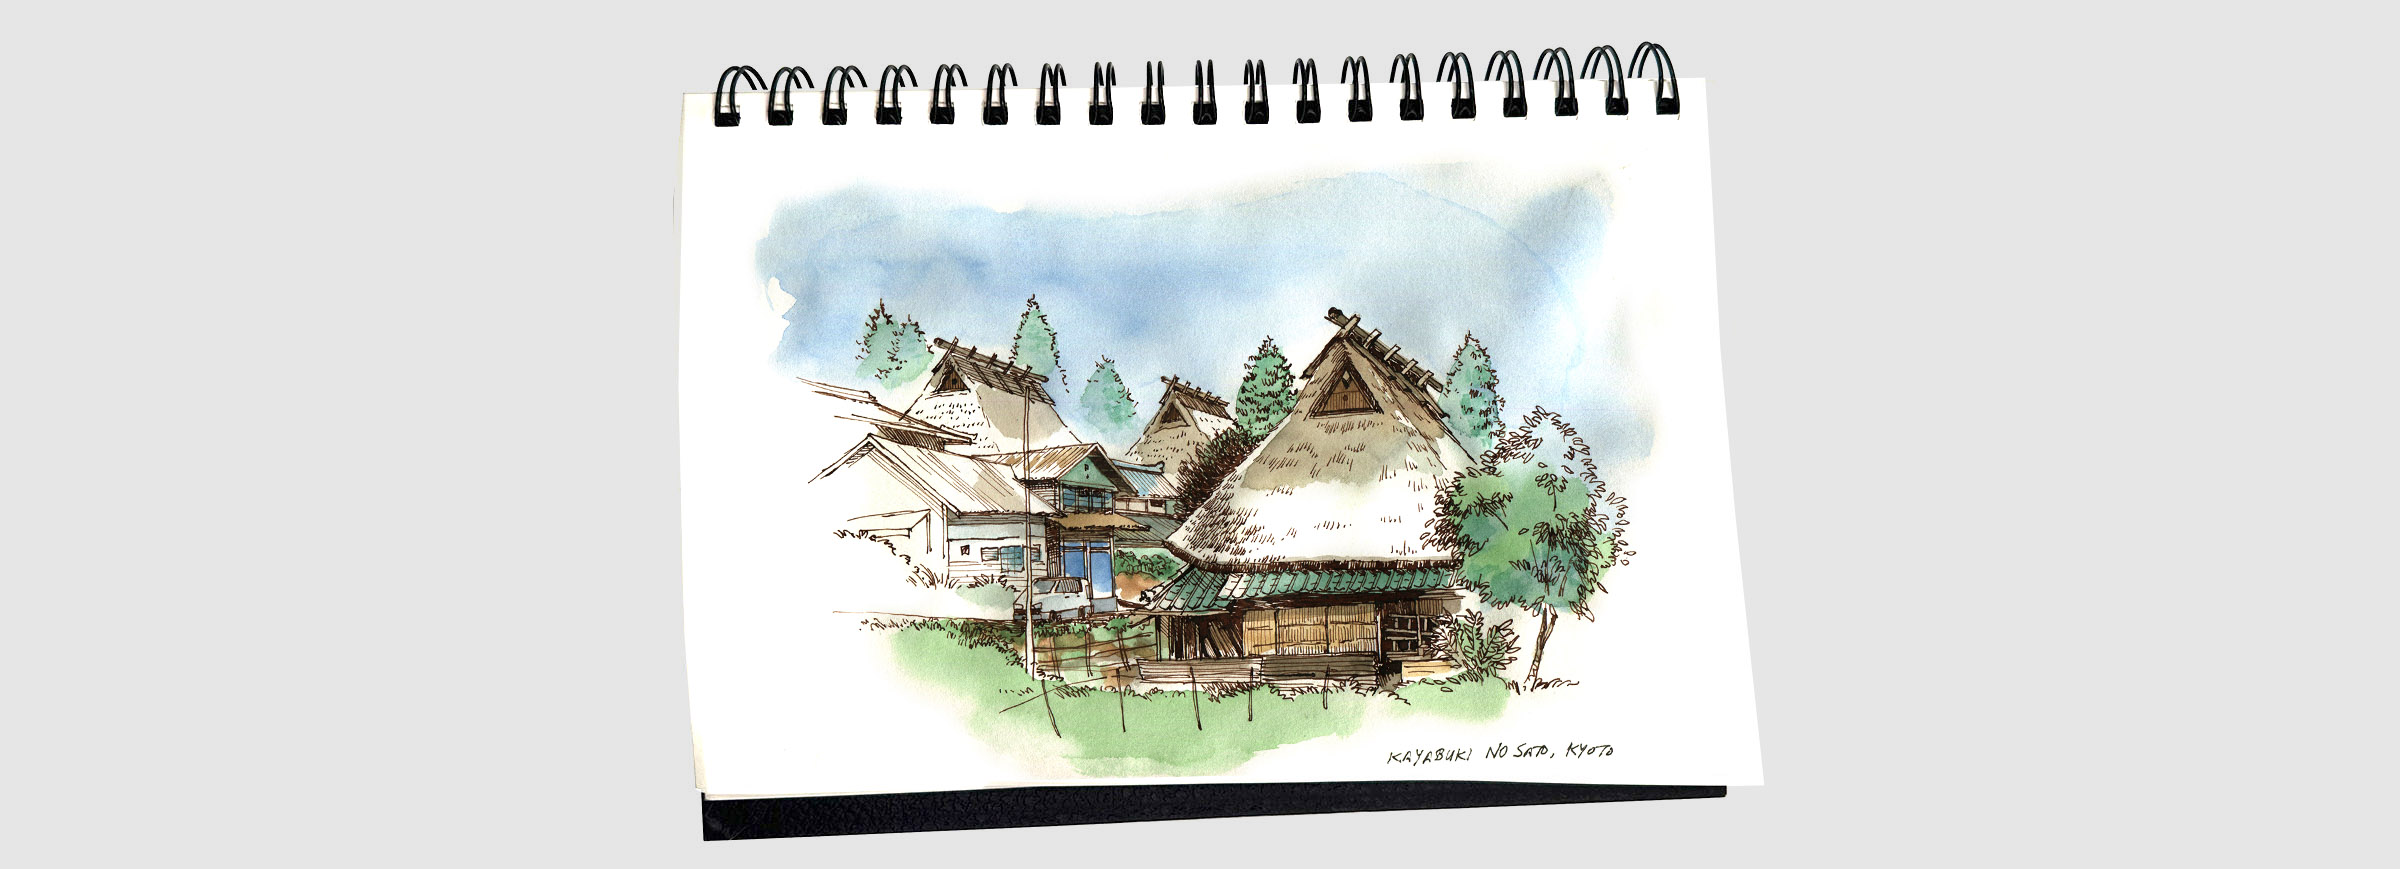 kyoto-kayabuki-no-sato-sketchbook.jpg